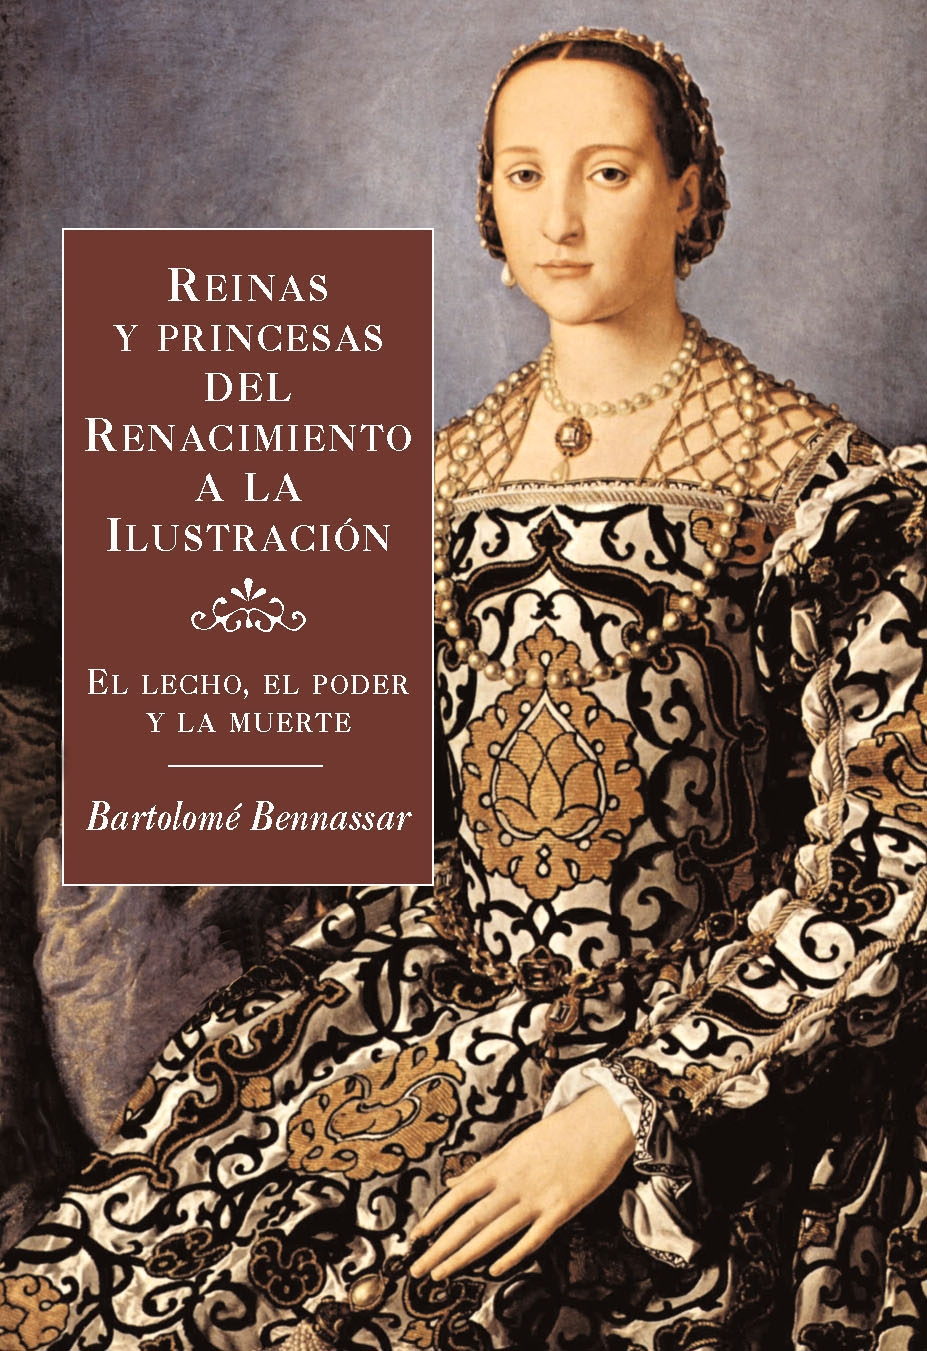 [Benassar,+Bartolomé+-+Reinas+y+Princesas+del+Renacimiento+a+la+Ilustración.jpg]